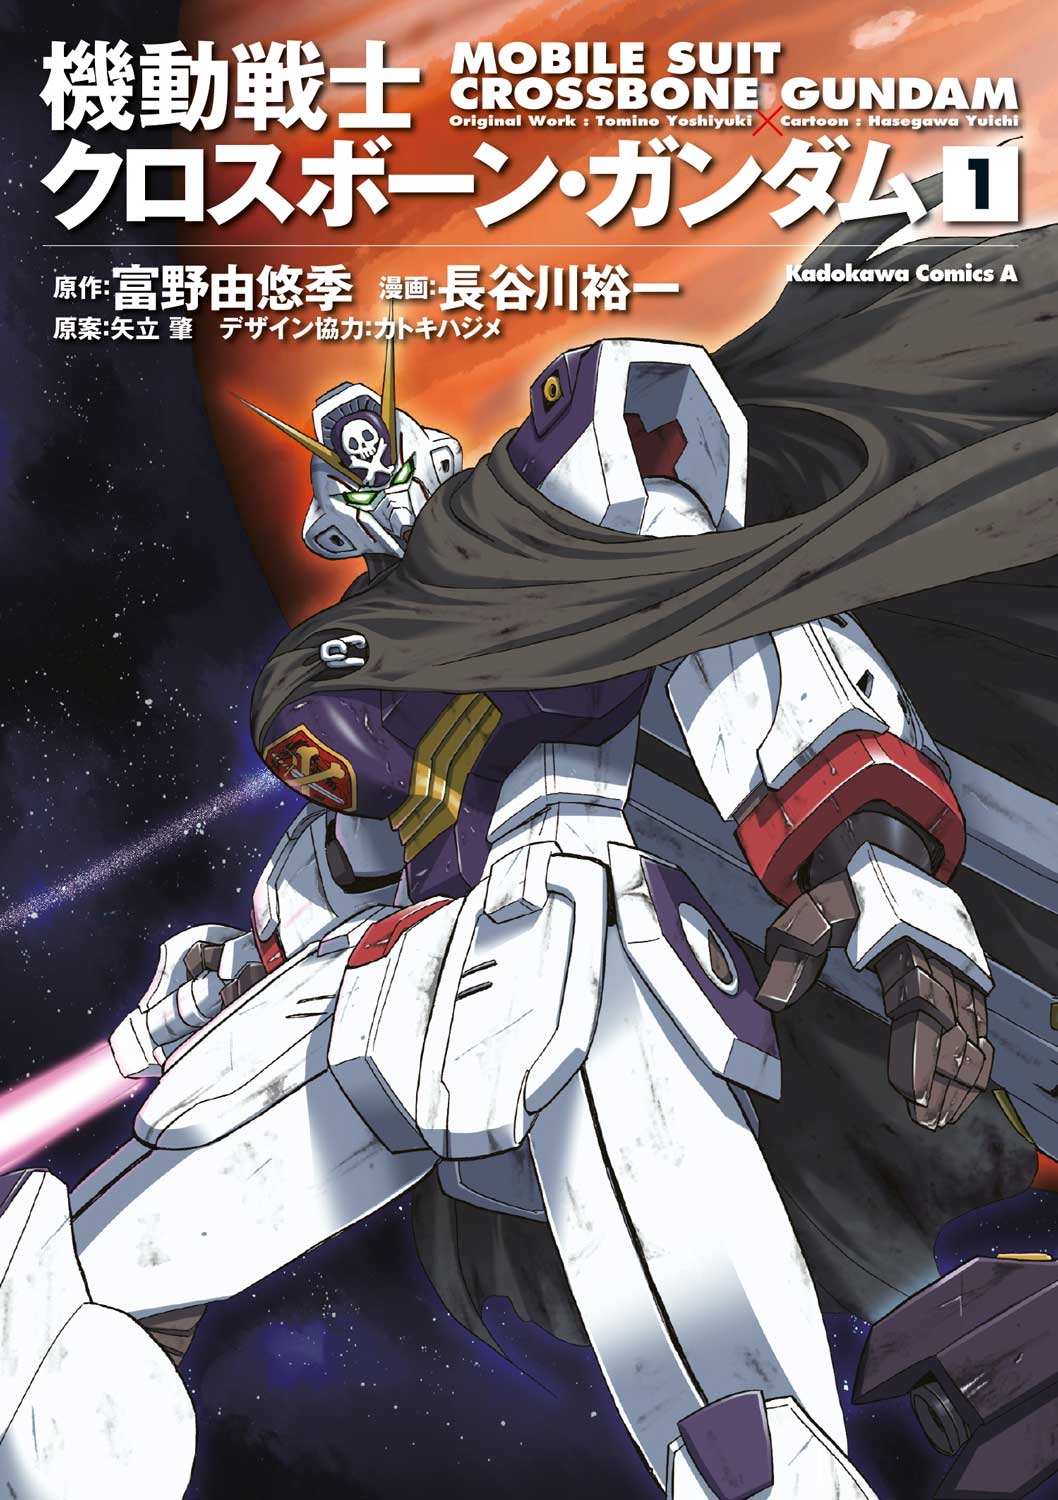 Libri Extra Mobile Suit Crossbone Gundam NUOVO SIGILLATO, EDIZIONE DEL 28/11/2019 SUBITO DISPONIBILE